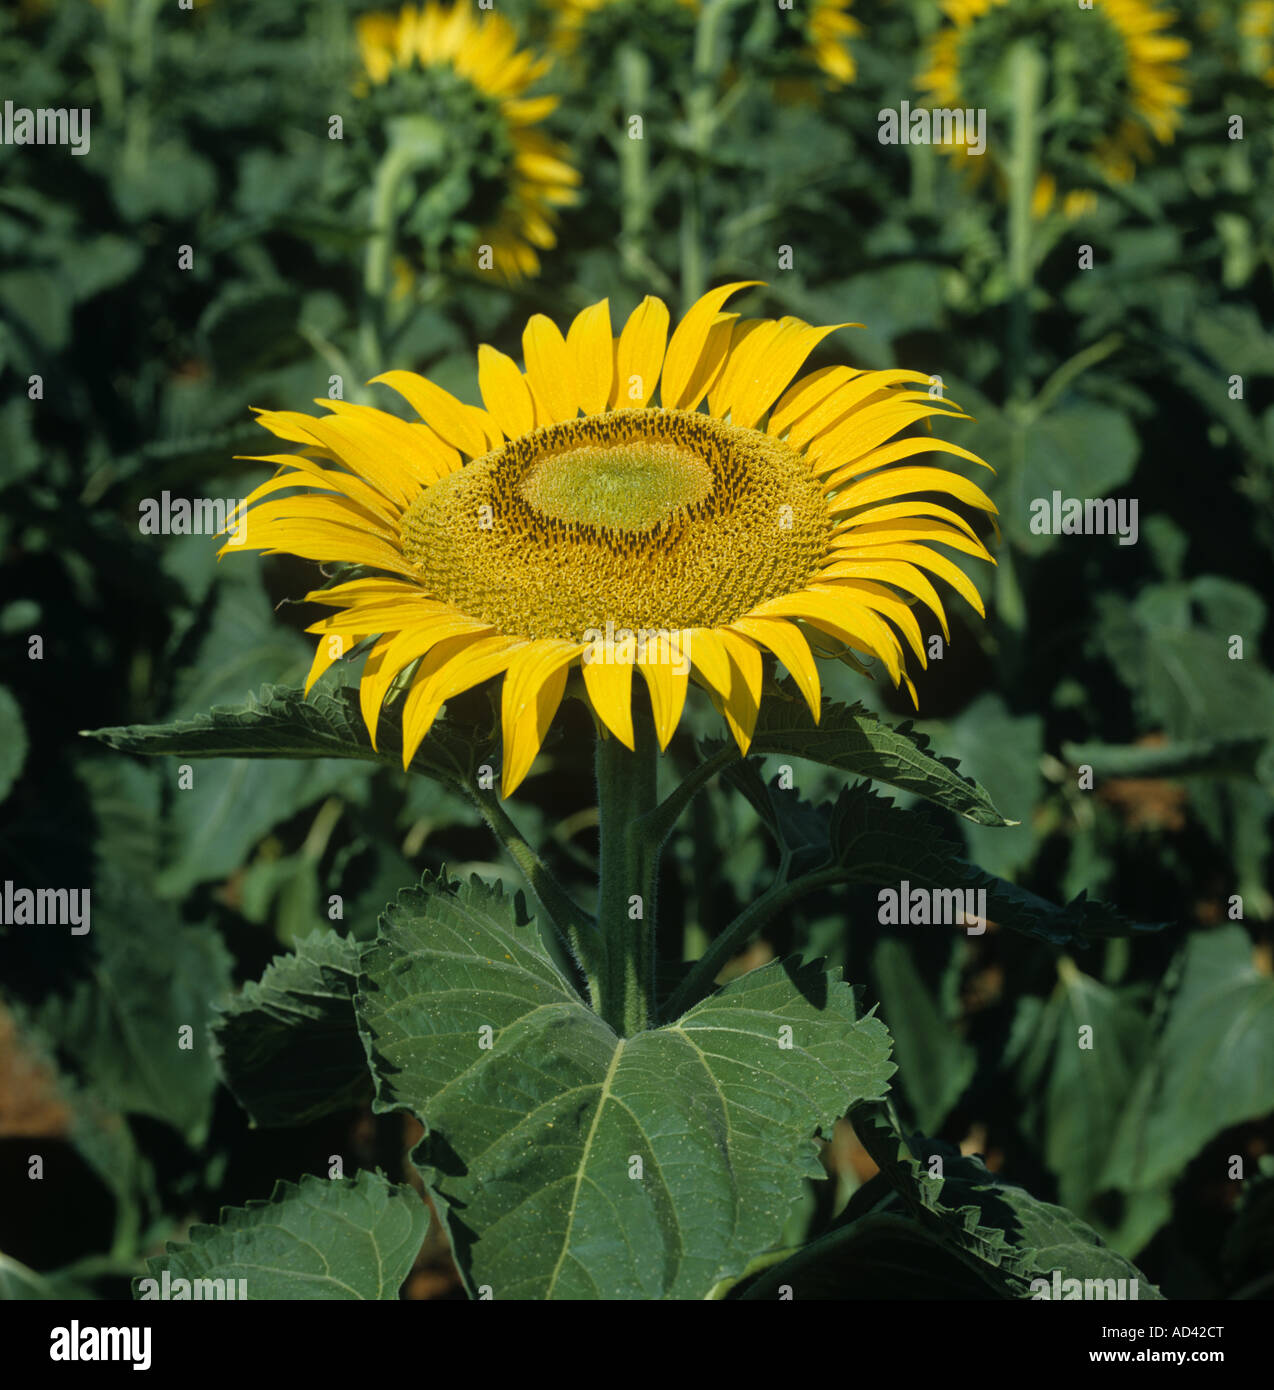 Eine gelbe Sonnenblumenblume in einer Ölpflanze aufgeschlagen, um eine vertikale Sommersonne Toskana Italien Gesicht. juli Stockfoto